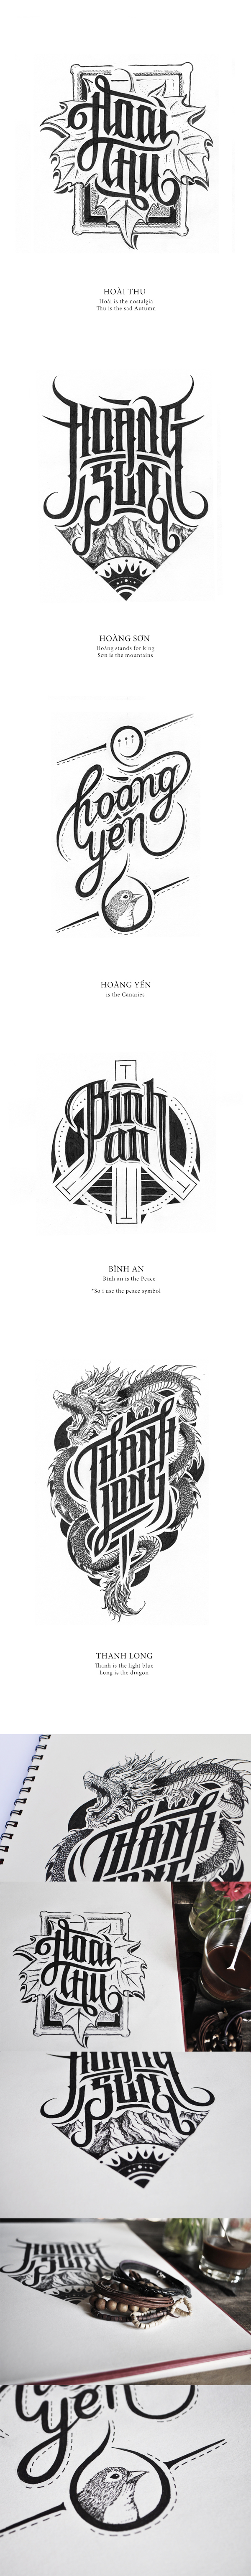 Les projets Typographies et Letterings géniaux de Biksense Nguyen